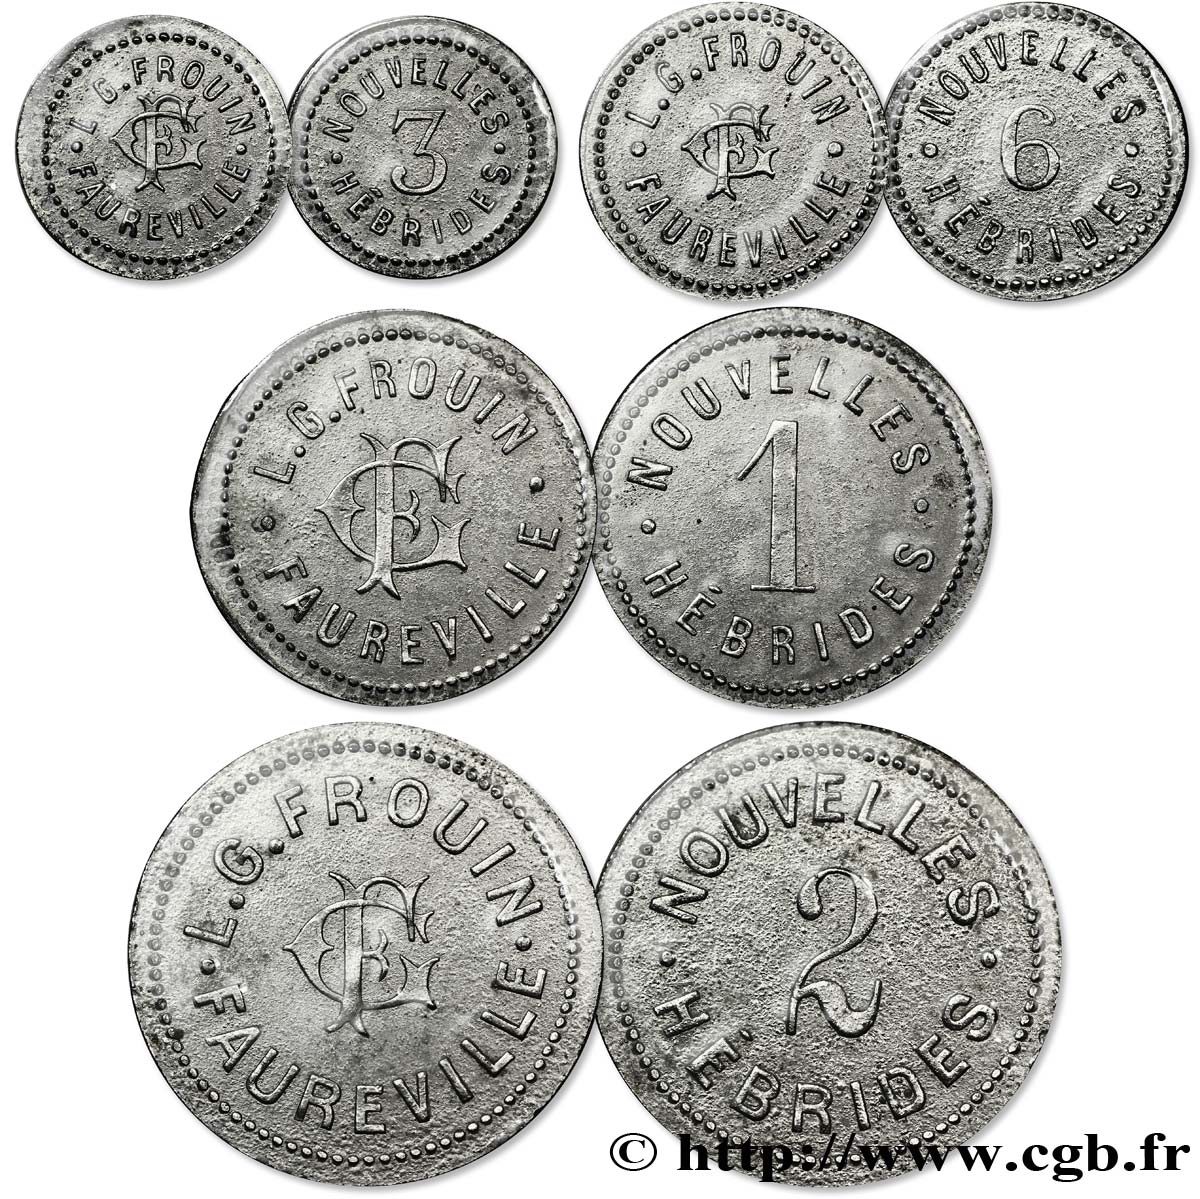 NUEVAS HÉBRIDAS (VANUATU desde 1980) Série de 4 Monnaies Frouin-Faureville n.d.  MBC 